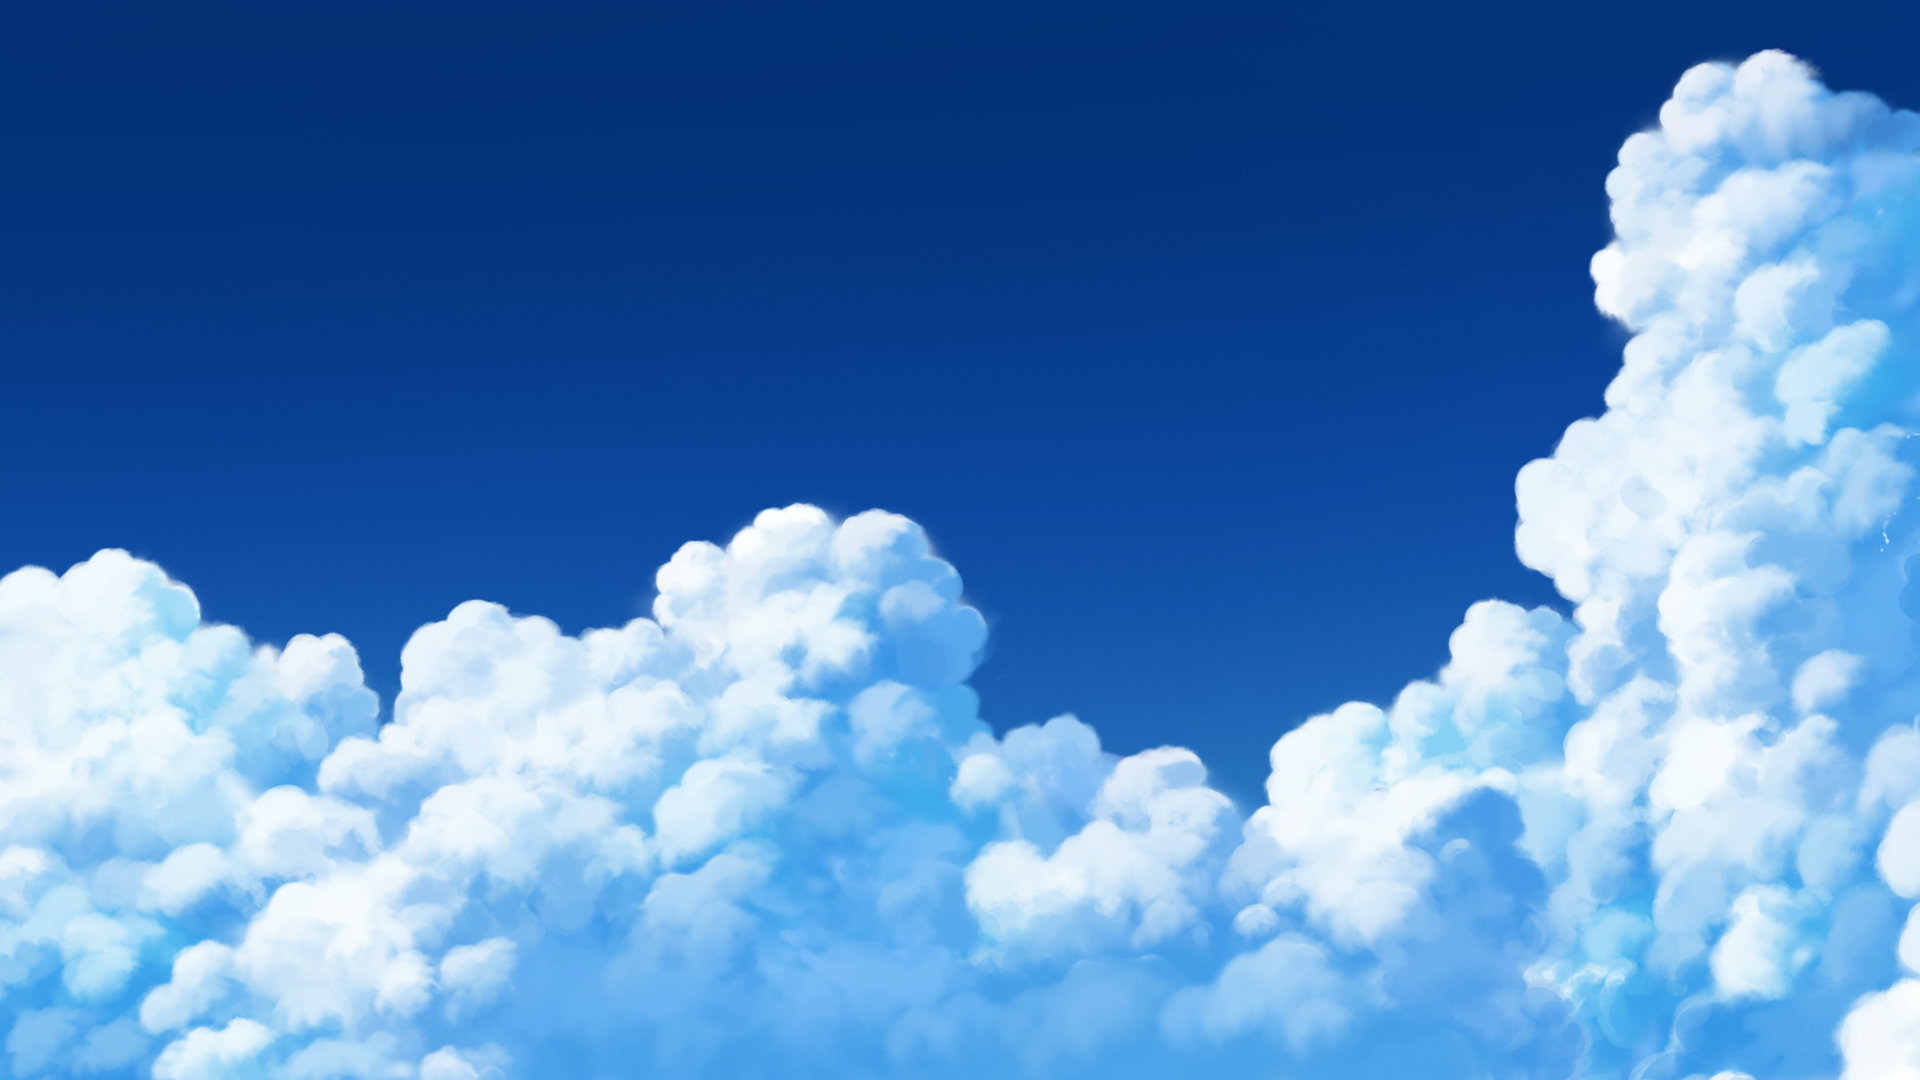 ほめのび 背景イラストレーター 雲 もくもく 雲 空 イラスト 背景 T Co 11zjsje9jb Twitter